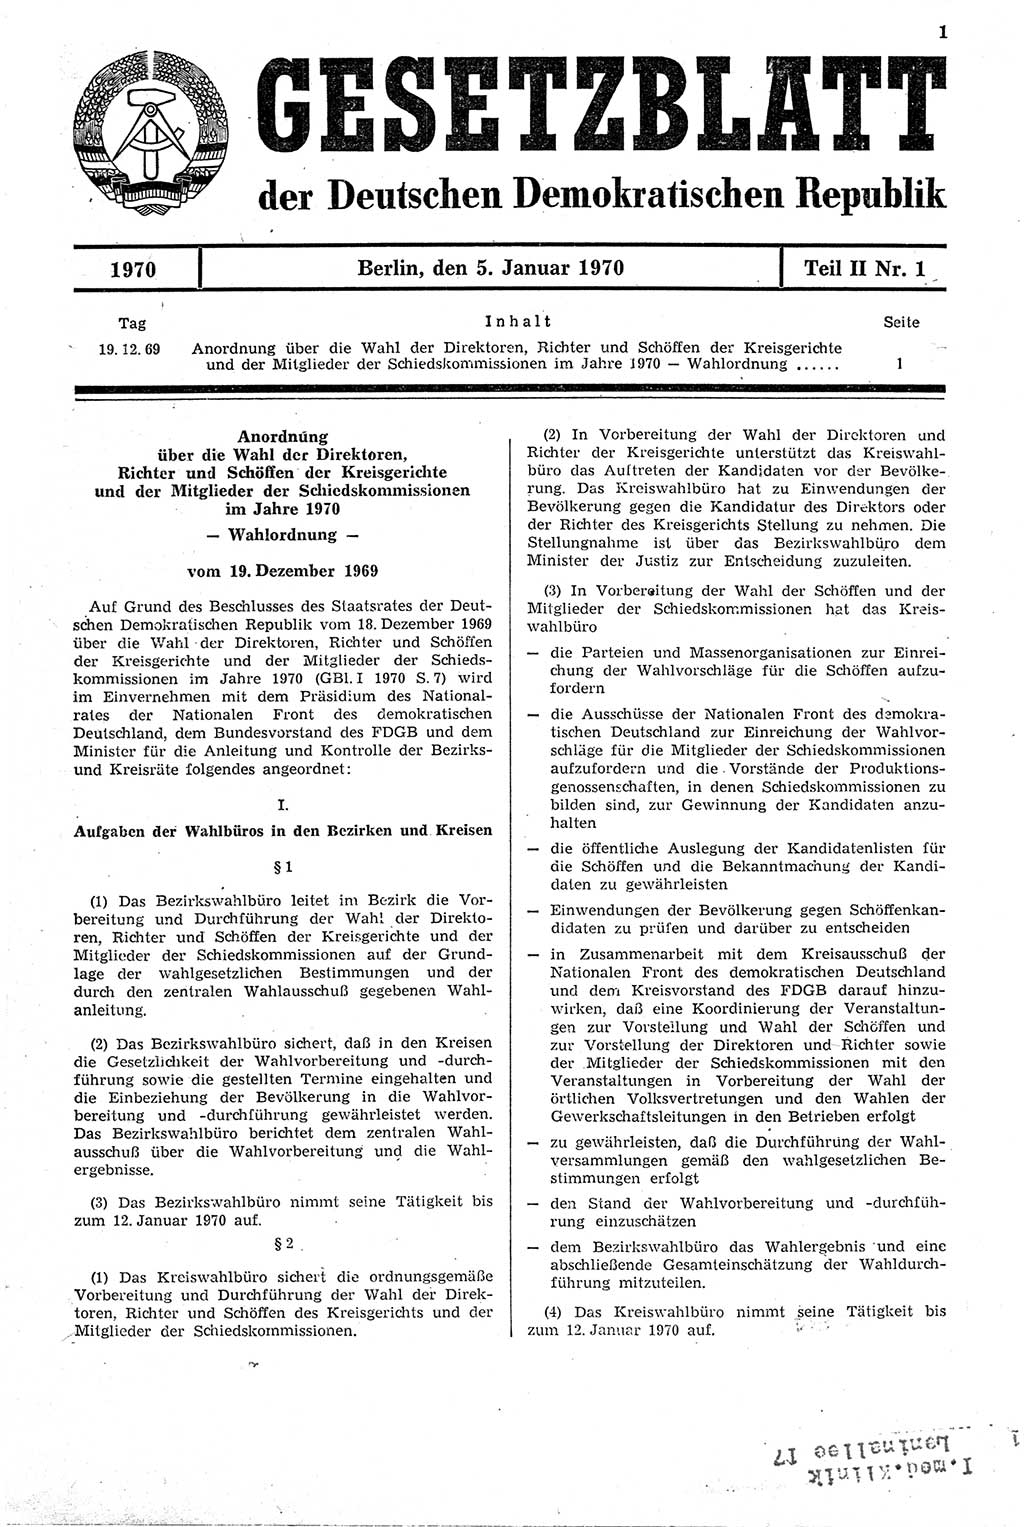 Gesetzblatt (GBl.) der Deutschen Demokratischen Republik (DDR) Teil ⅠⅠ 1970, Seite 1 (GBl. DDR ⅠⅠ 1970, S. 1)